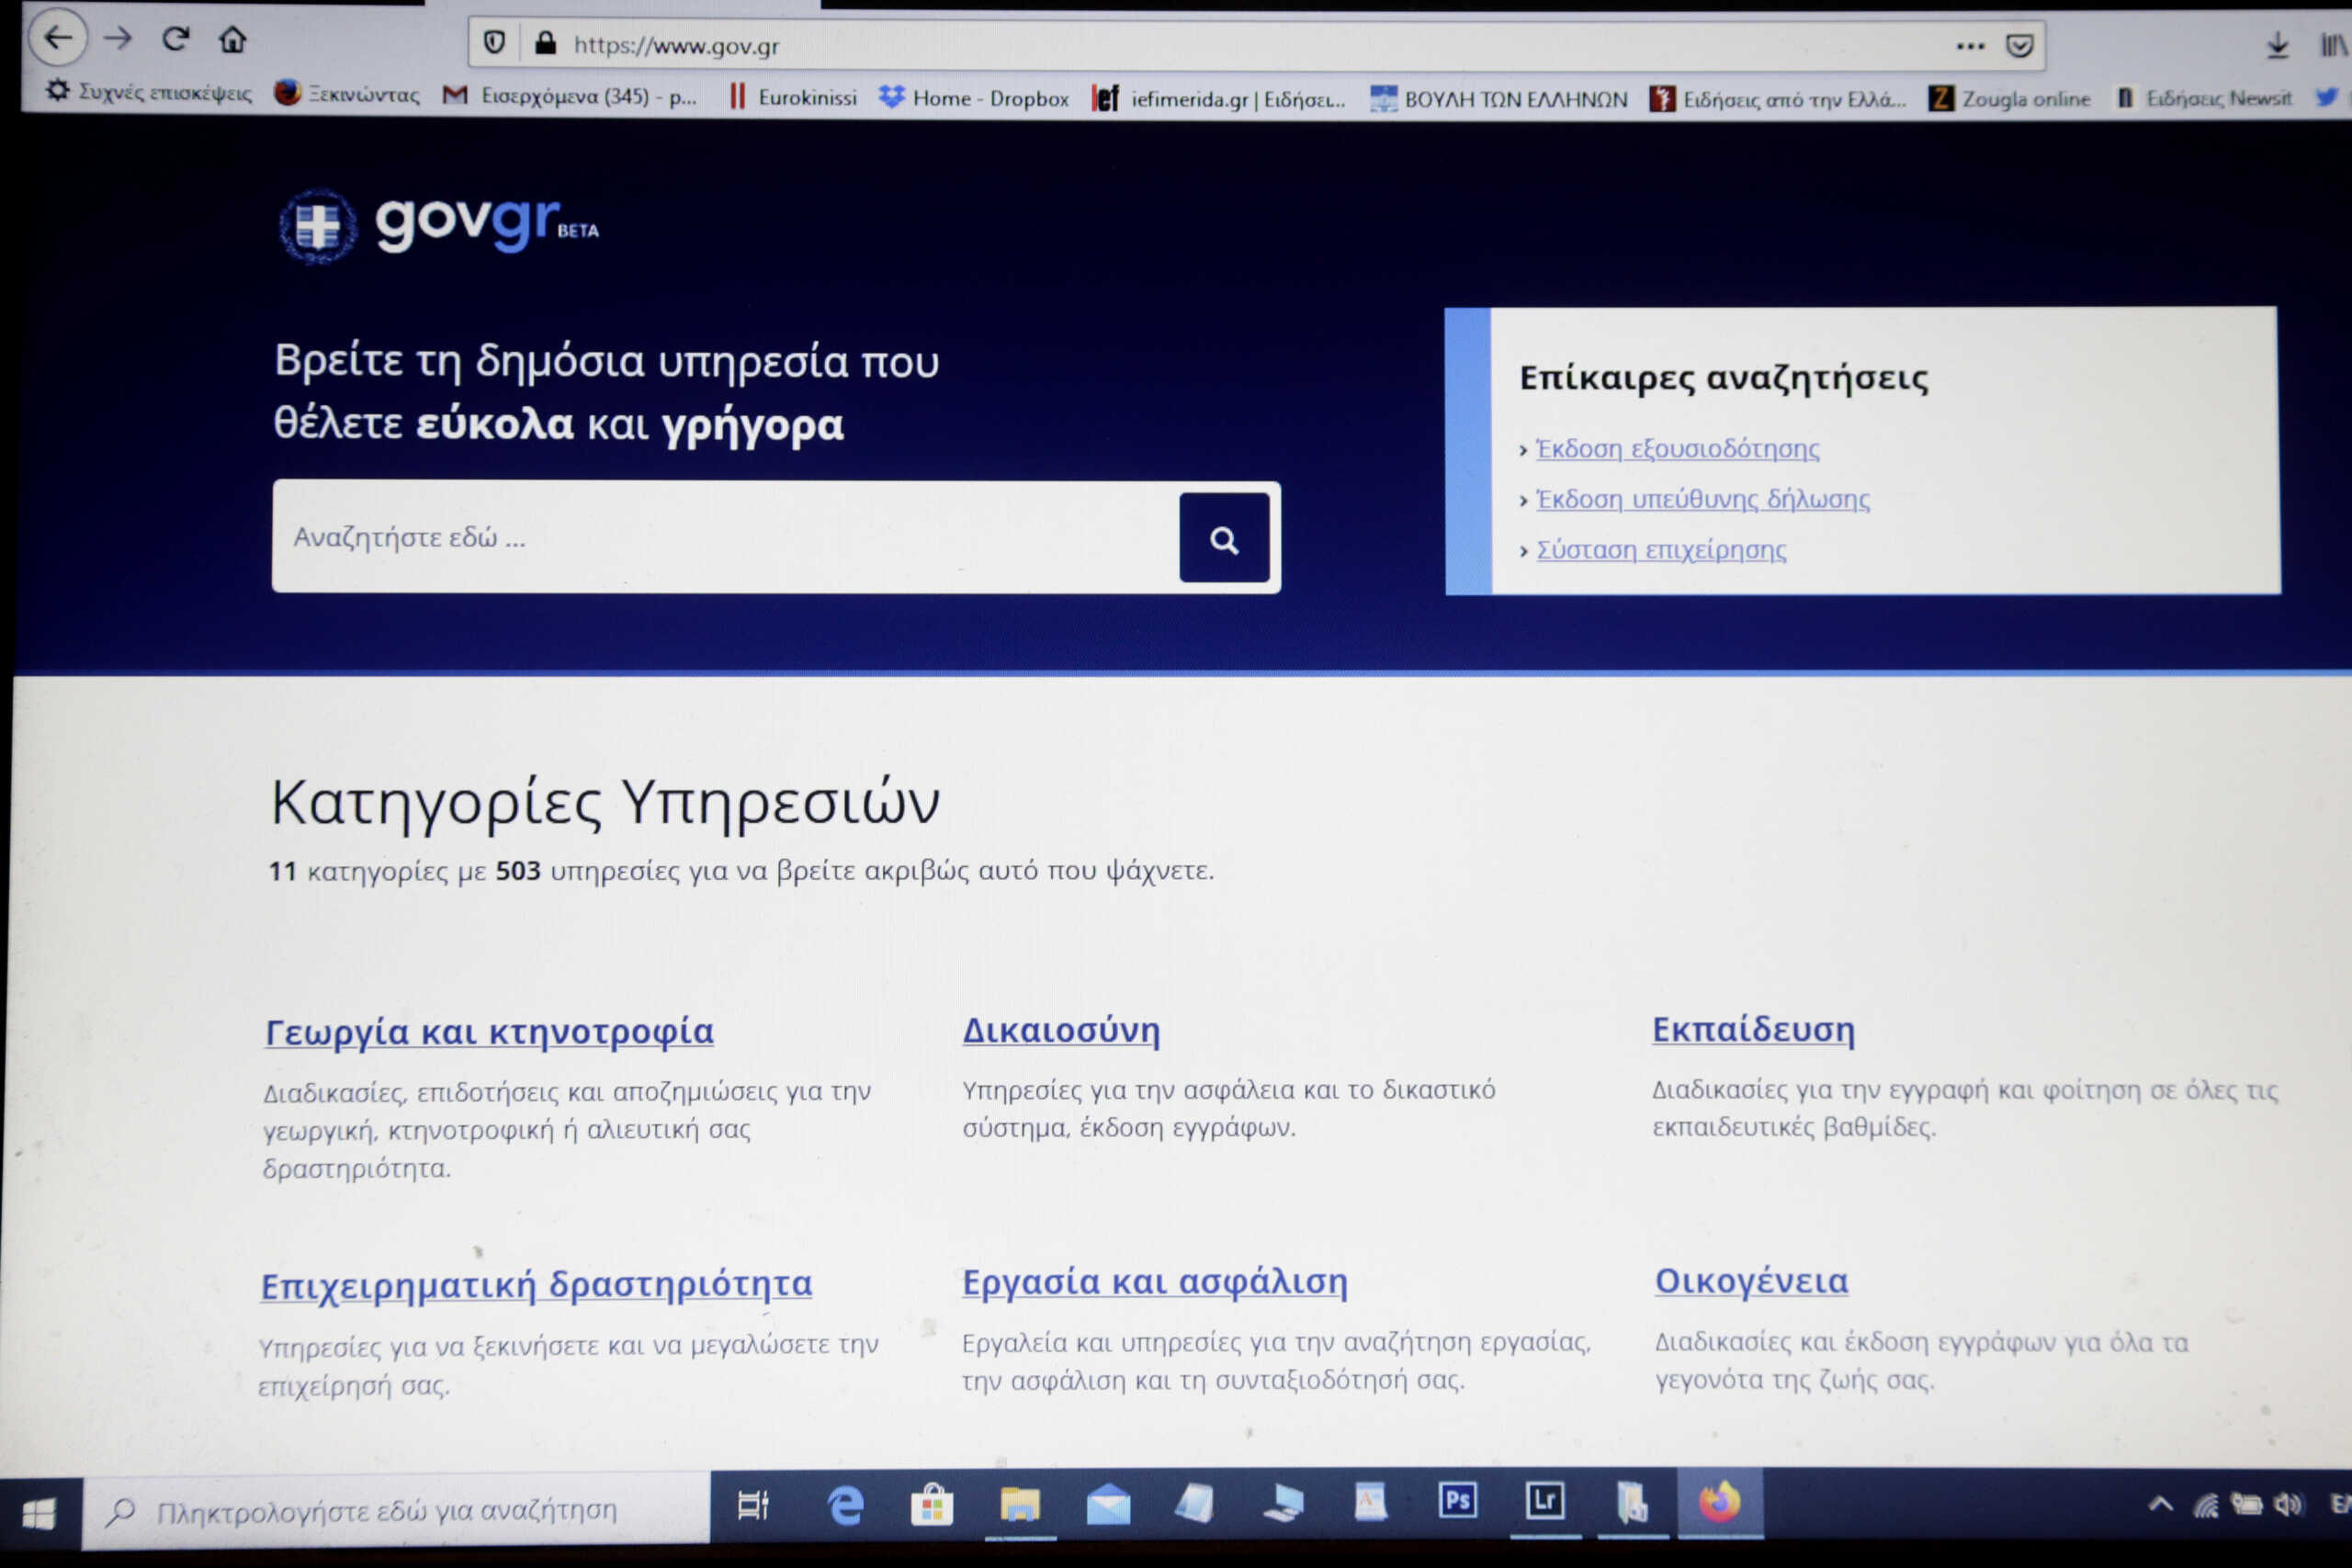 Ψηφιακός Βοηθός: «Αποκαλύπτεται» την Τετάρτη η νέα εφαρμογή του gov.gr – Μέσα Δεκεμβρίου δημοπρατείται ο «Δαίδαλος»